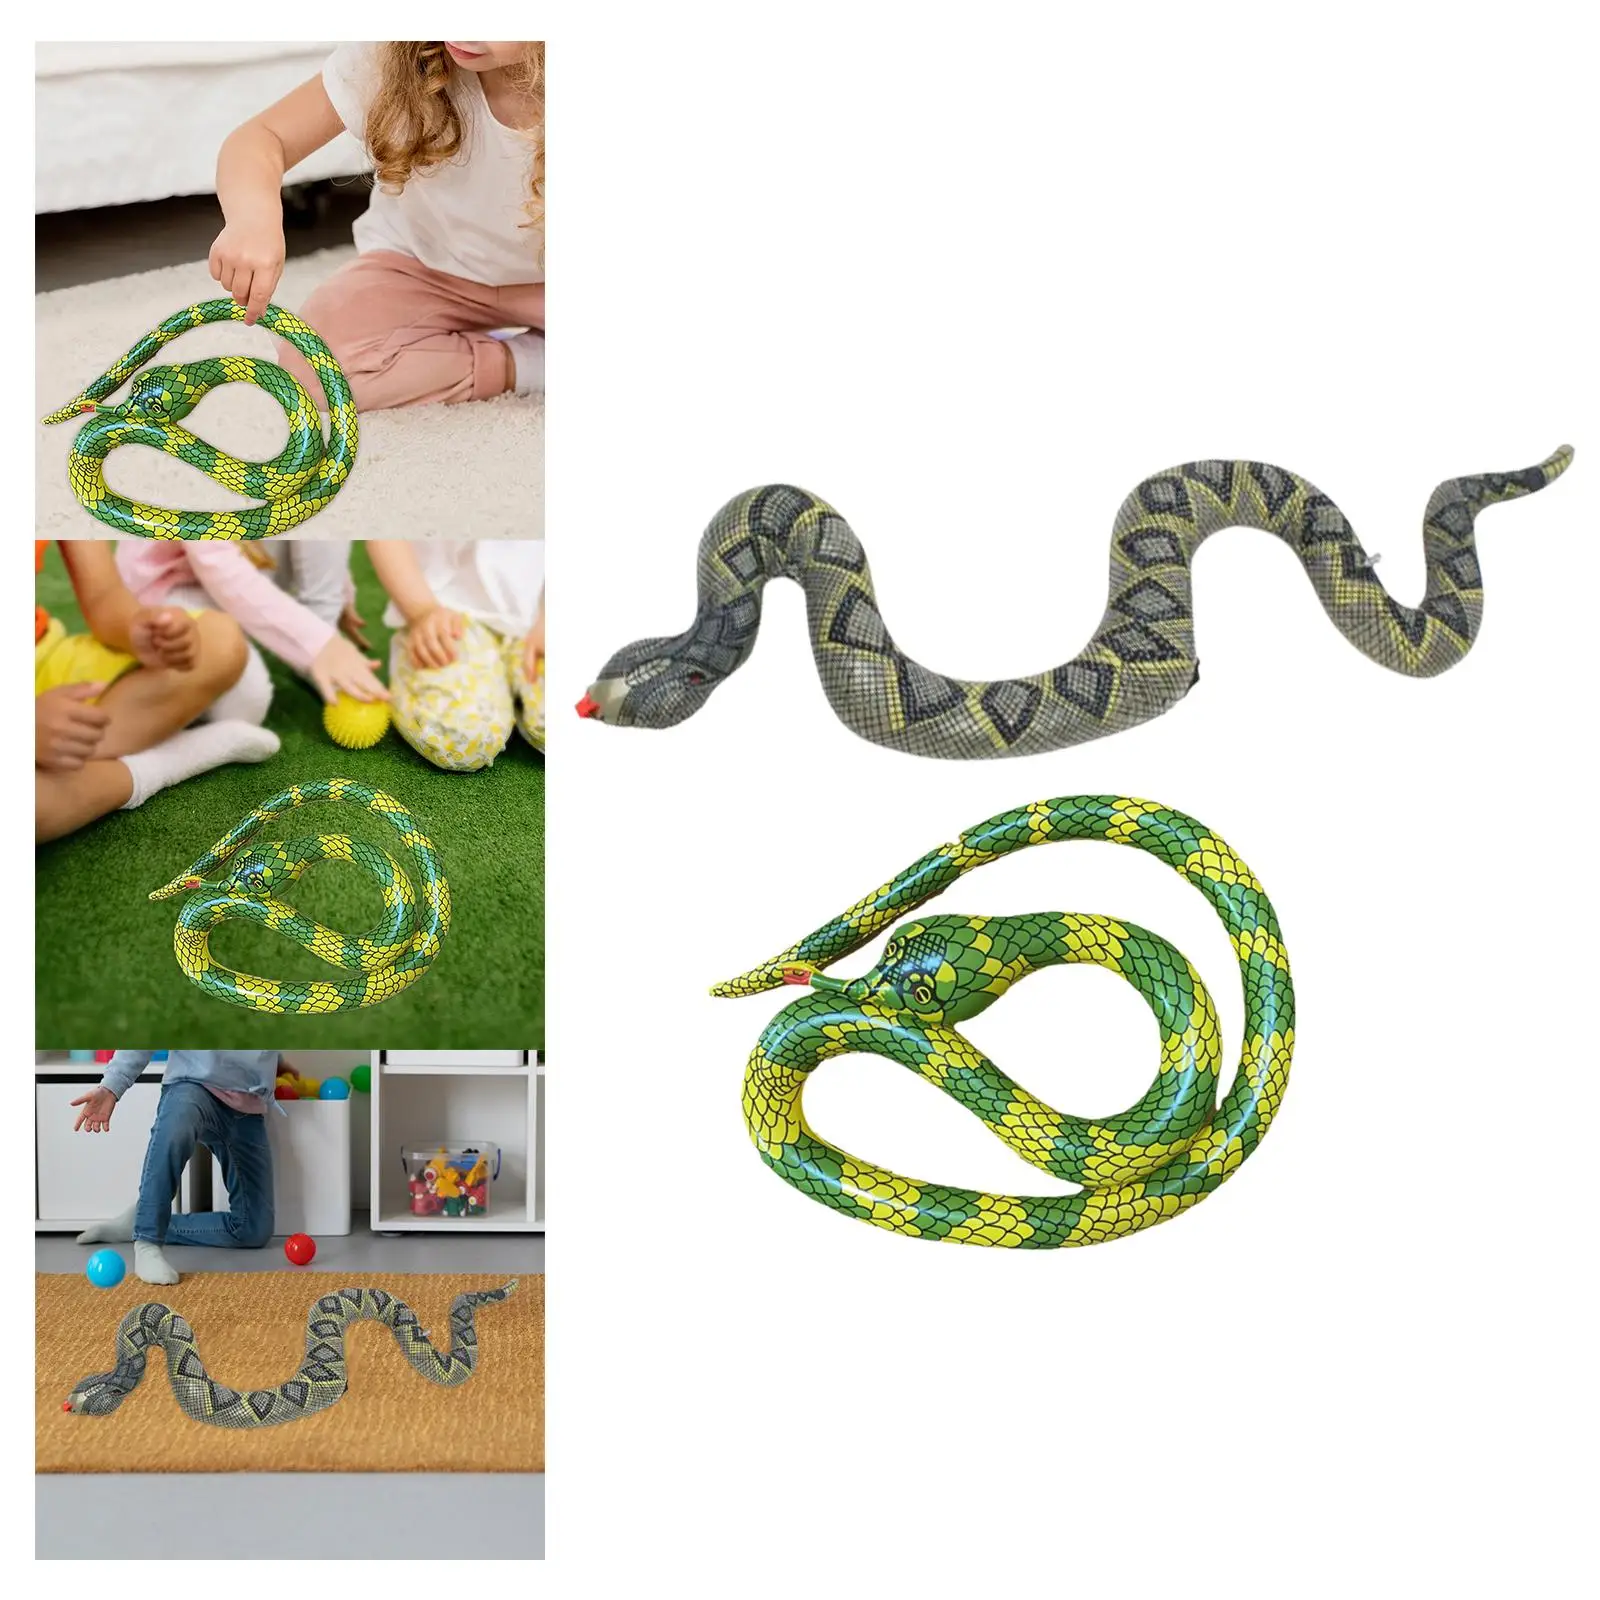 

Надувная игрушка-змея, ужасная искусственная змея, фигурка животного, декор на Хэллоуин, искусственные розыгрыши, обучающие игрушки